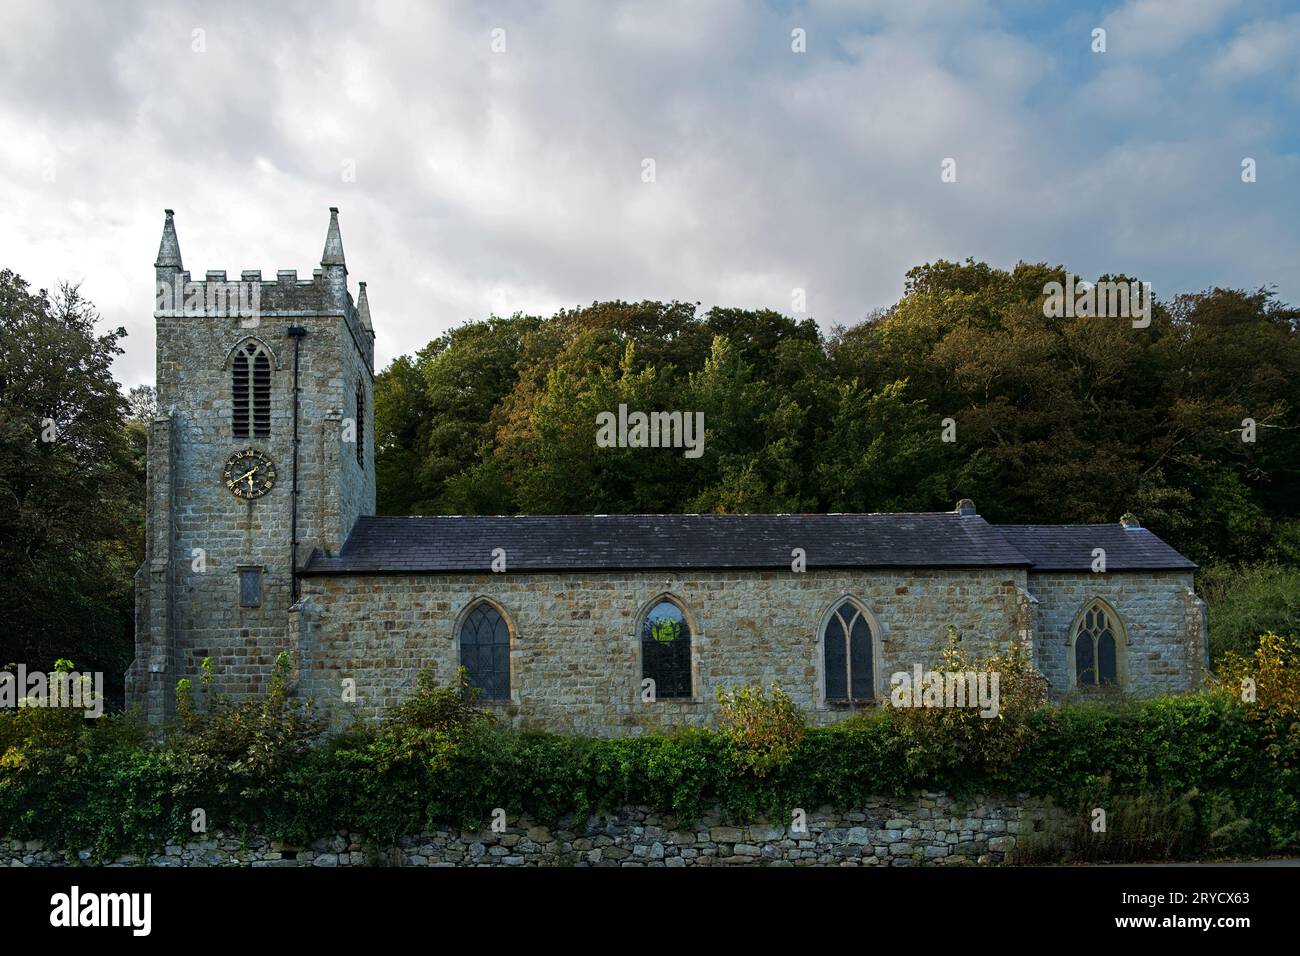 L'église St Cyngar à Llangefni, Anglesey, au nord du pays de Galles, a été construite en 1824. C'est maintenant un bâtiment classé Grade II. Banque D'Images